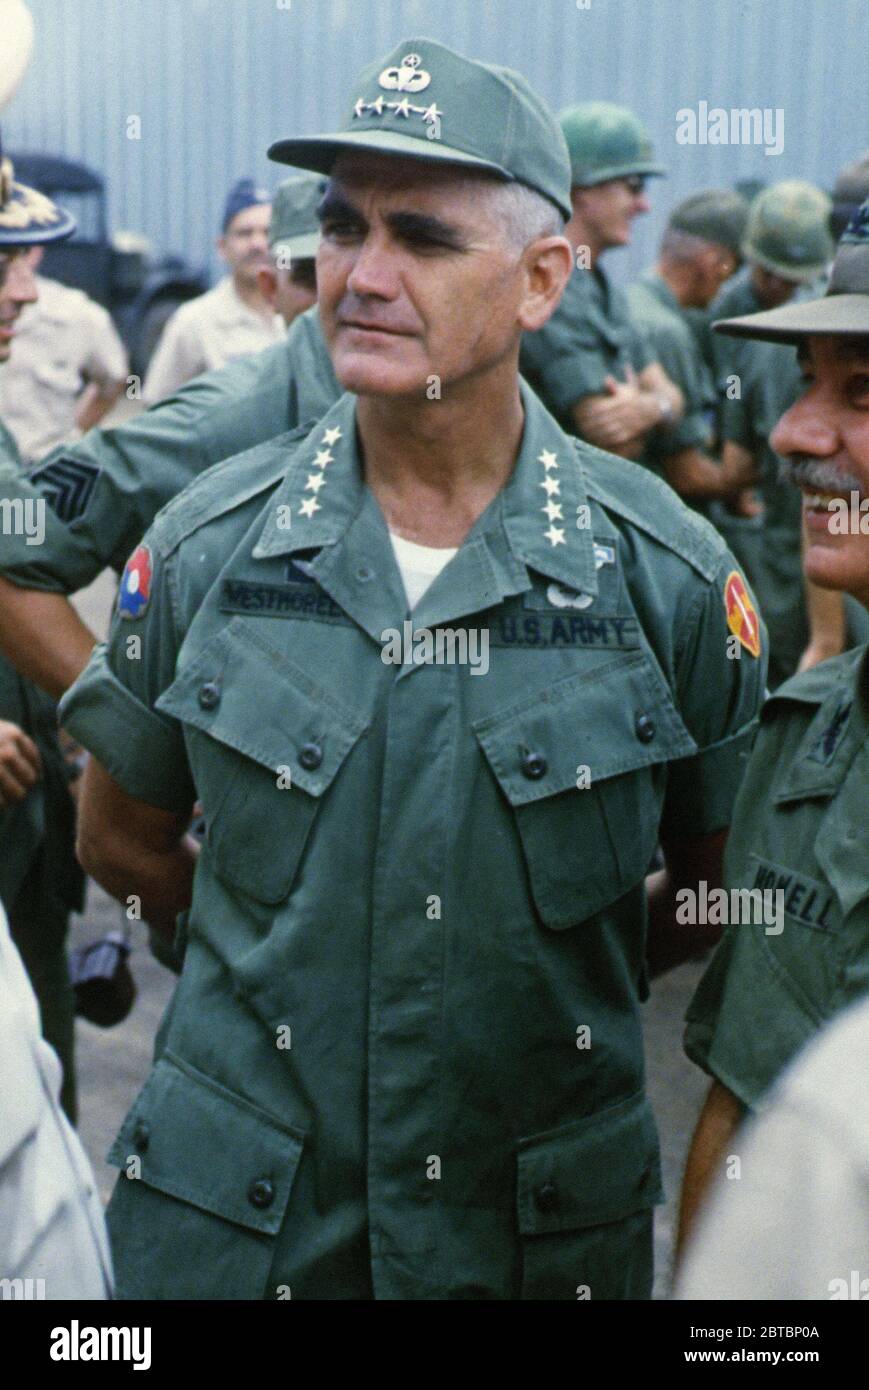 El General William C. Westmoreland, Comandante General, MACV, observa las ceremonias de la llegada del Regimiento de Voluntarios tailandeses reales en Vietnam, 21 de septiembre de 1967. (NARA) referencia del archivo # 1003-831THA Foto de stock